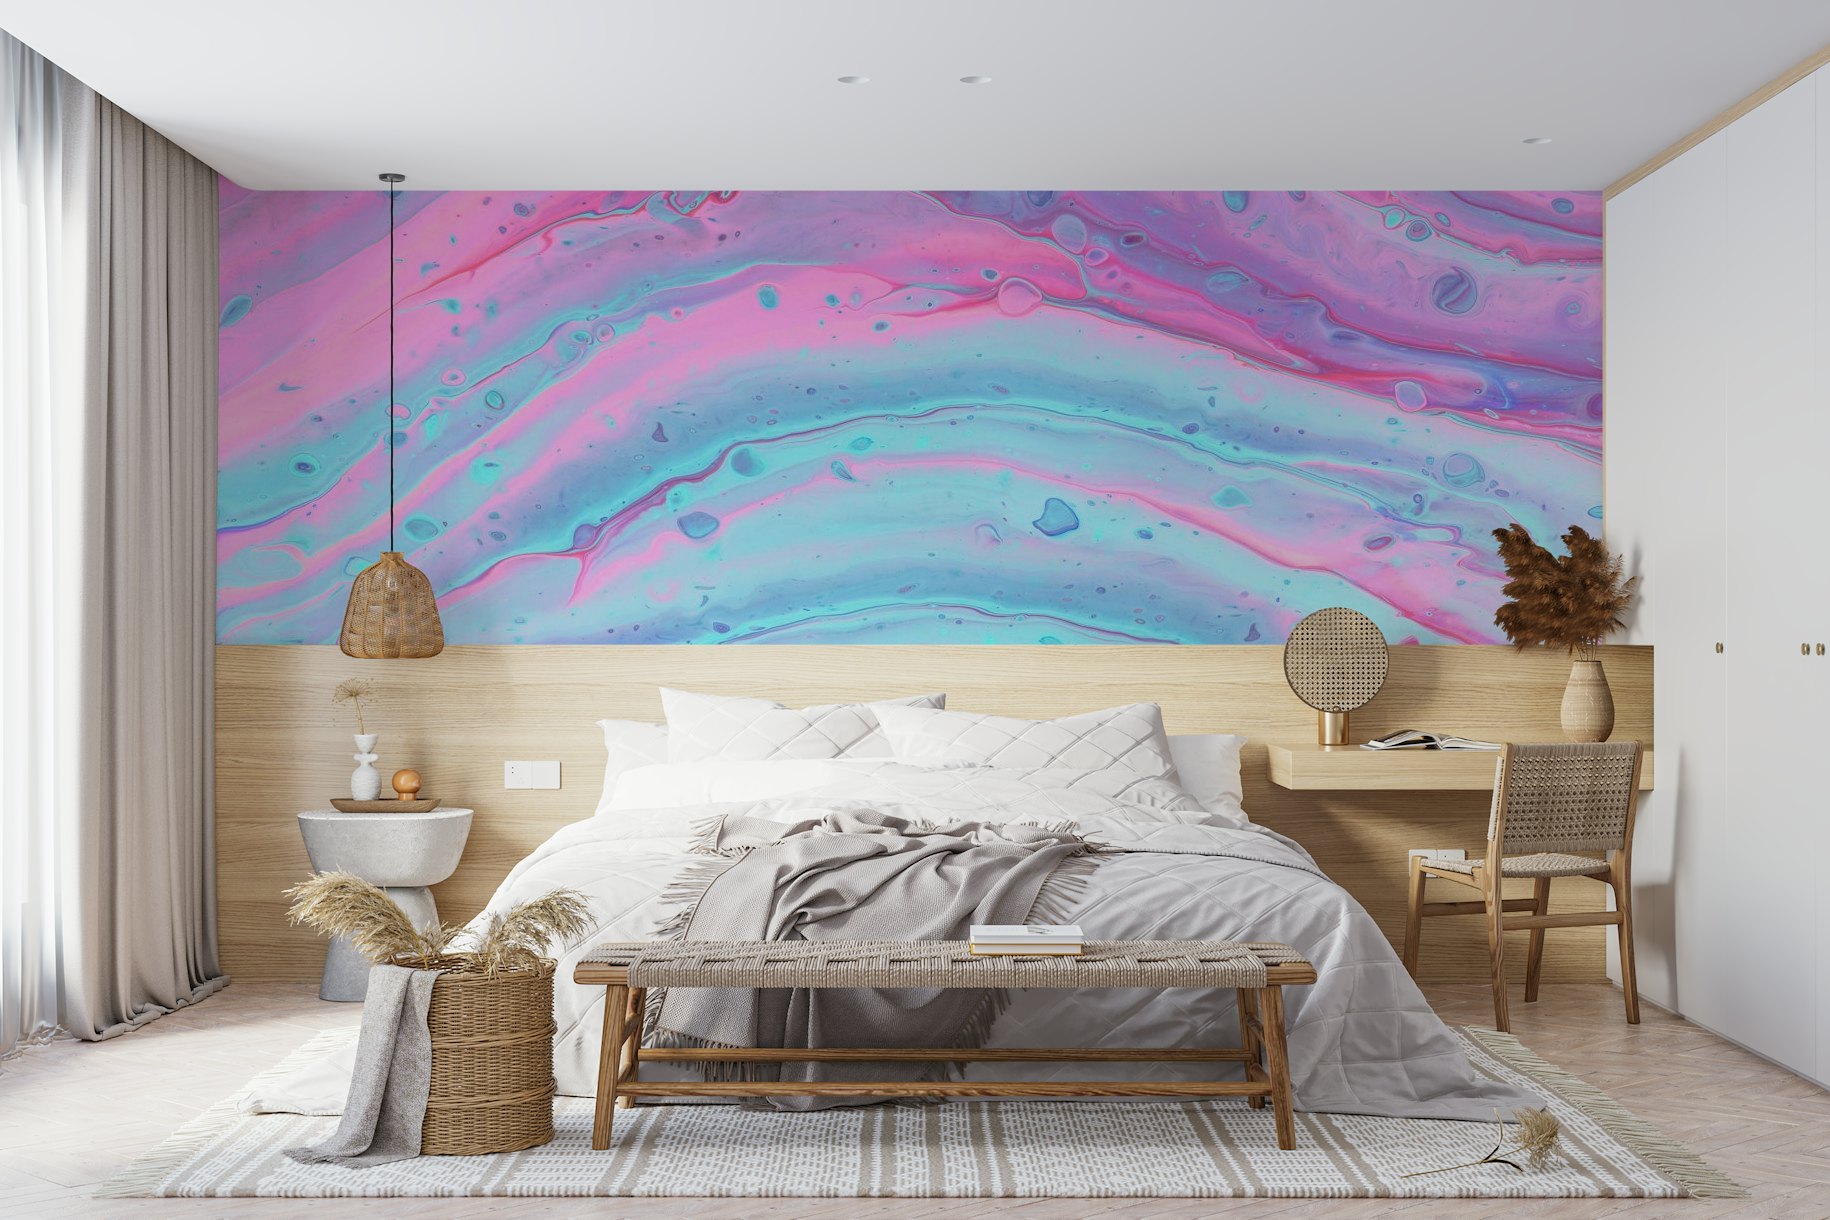 Vibrant liquid marble wallpaper